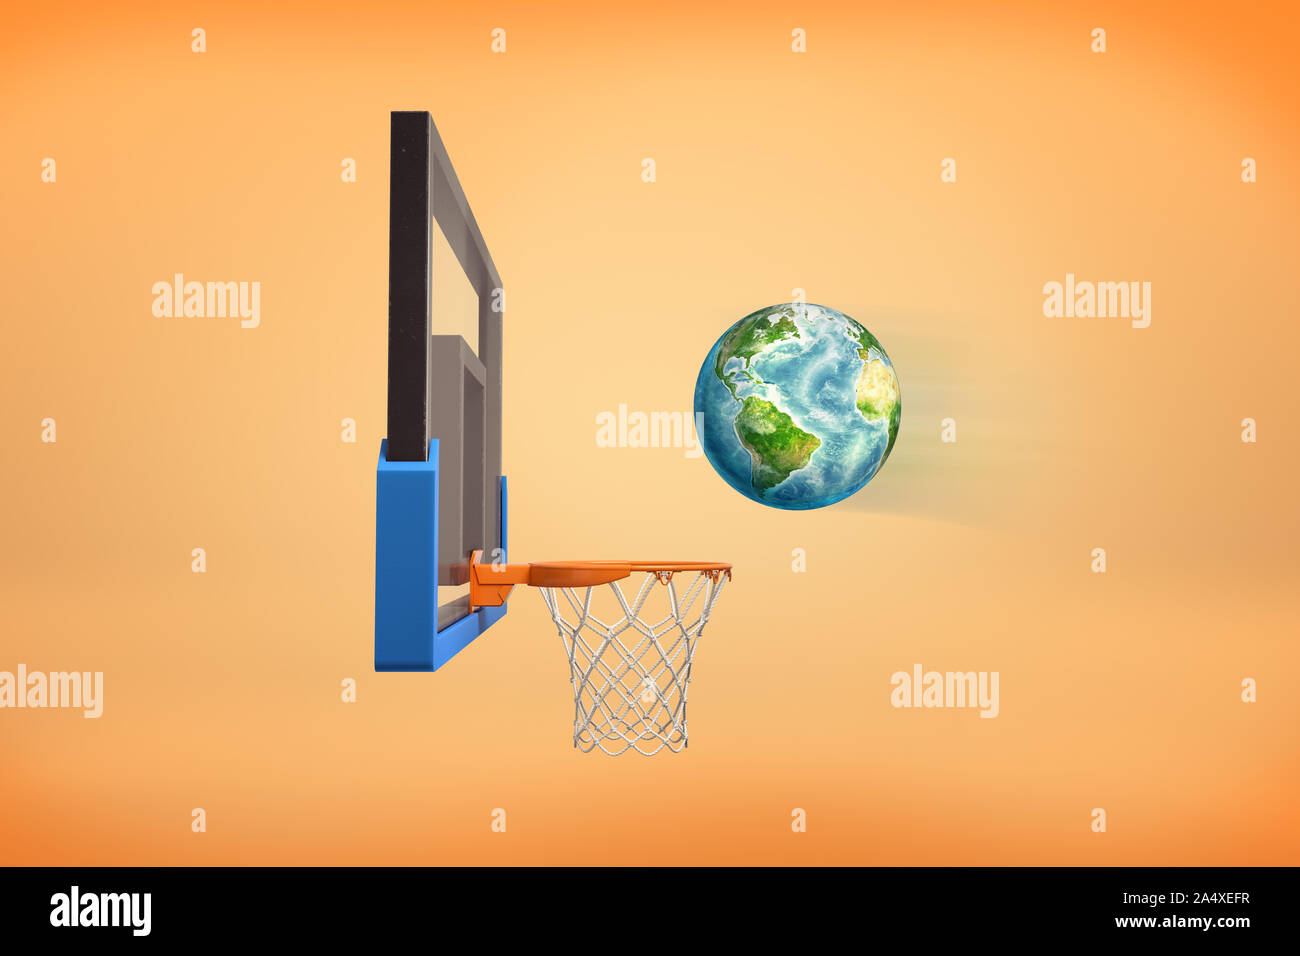 3D rendering della sfera realistica guardando come un globo terrestre vola pronto a cadere all'interno di un Basketball hoop. Foto Stock